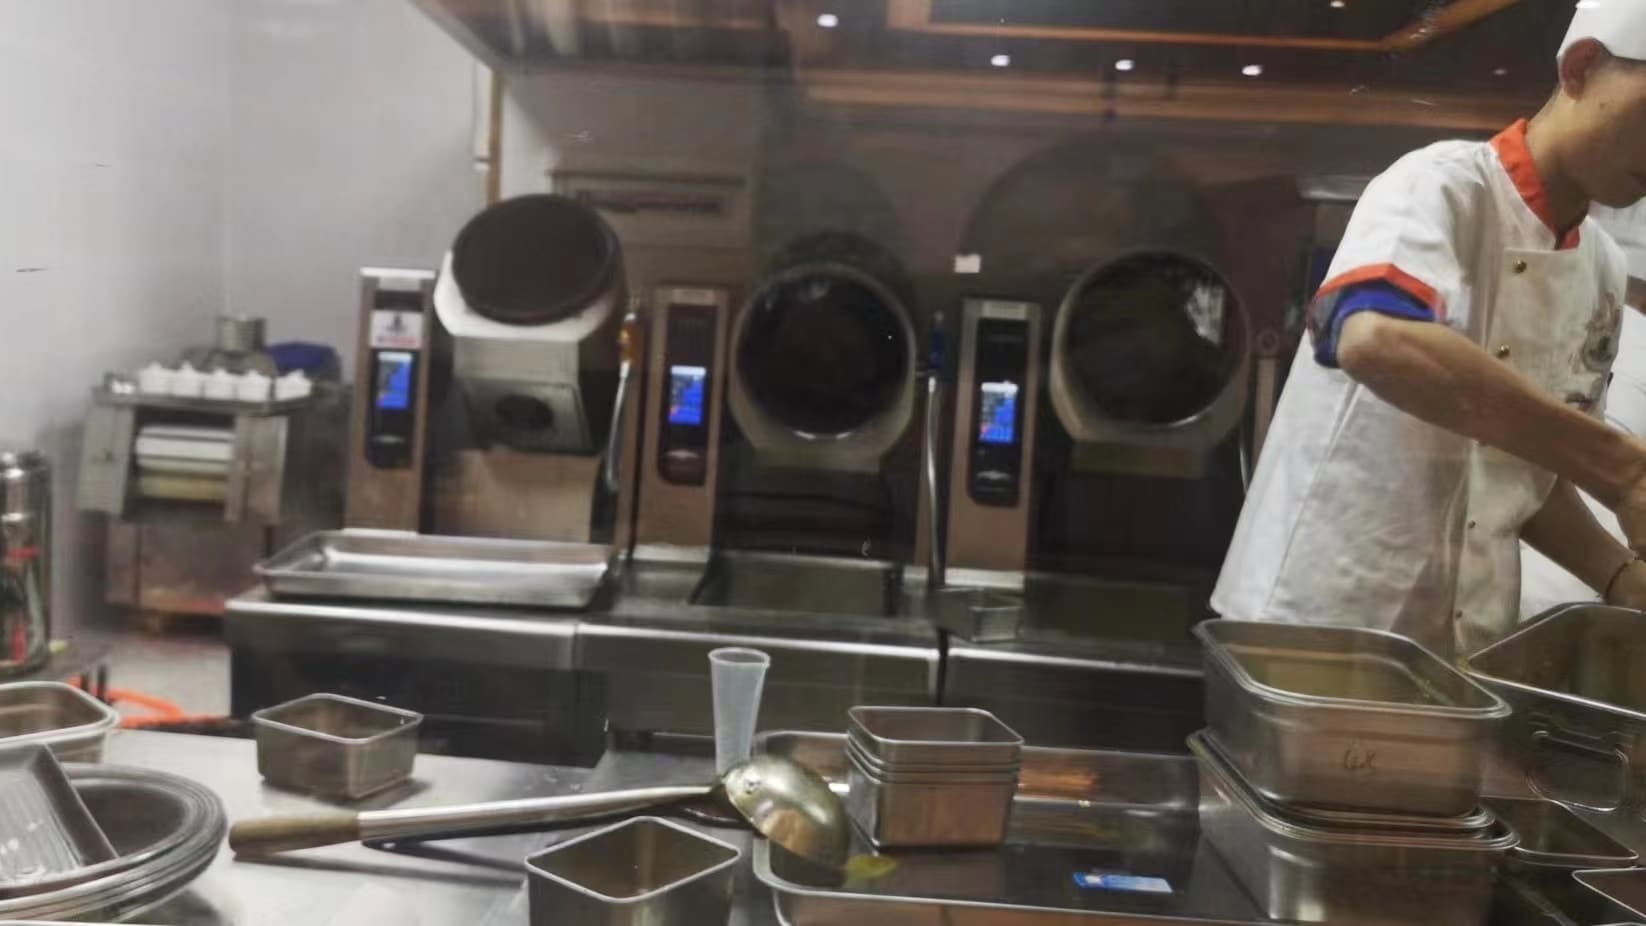 Automatic Cooking Machine Robot CM-15KW-ZXCA Floor Cooking Machine 30L  Chefmax